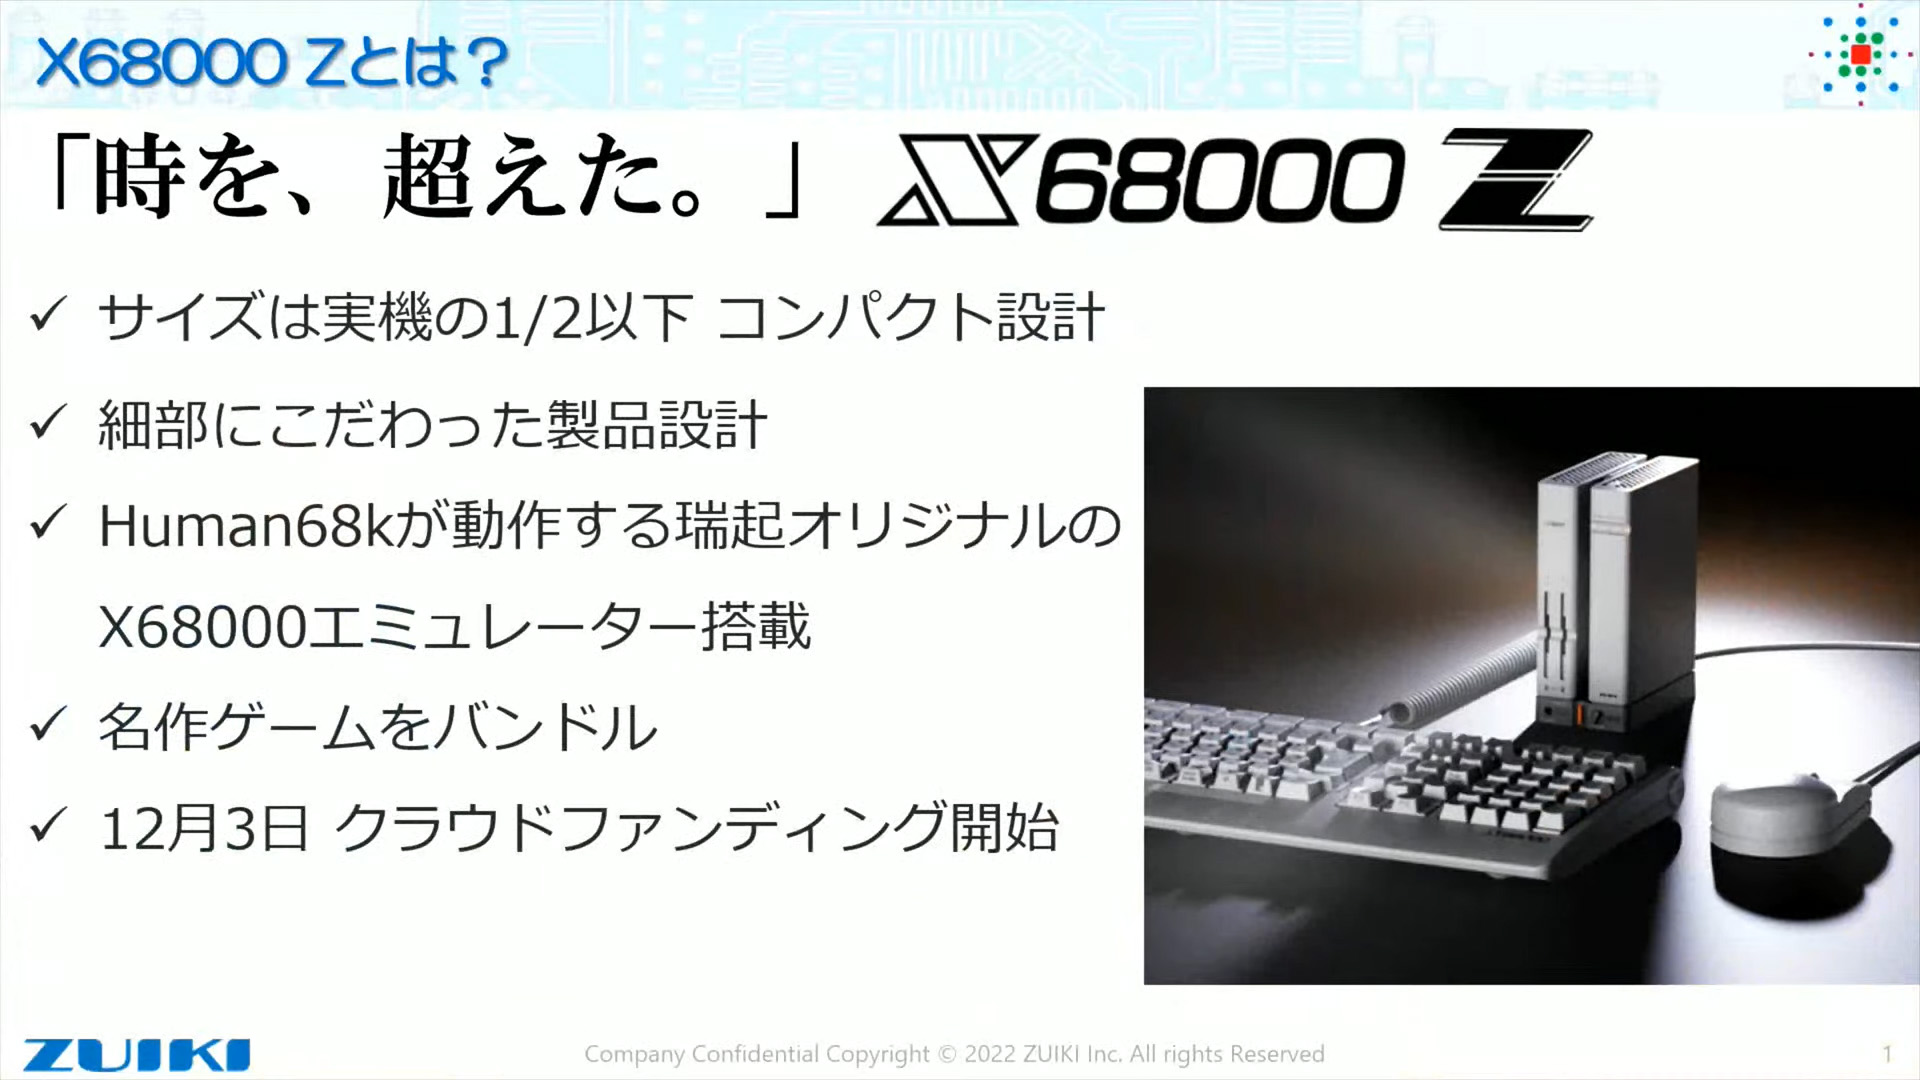 起動画面やバンドルタイトルがお披露目された「X68000 Z」発表情報